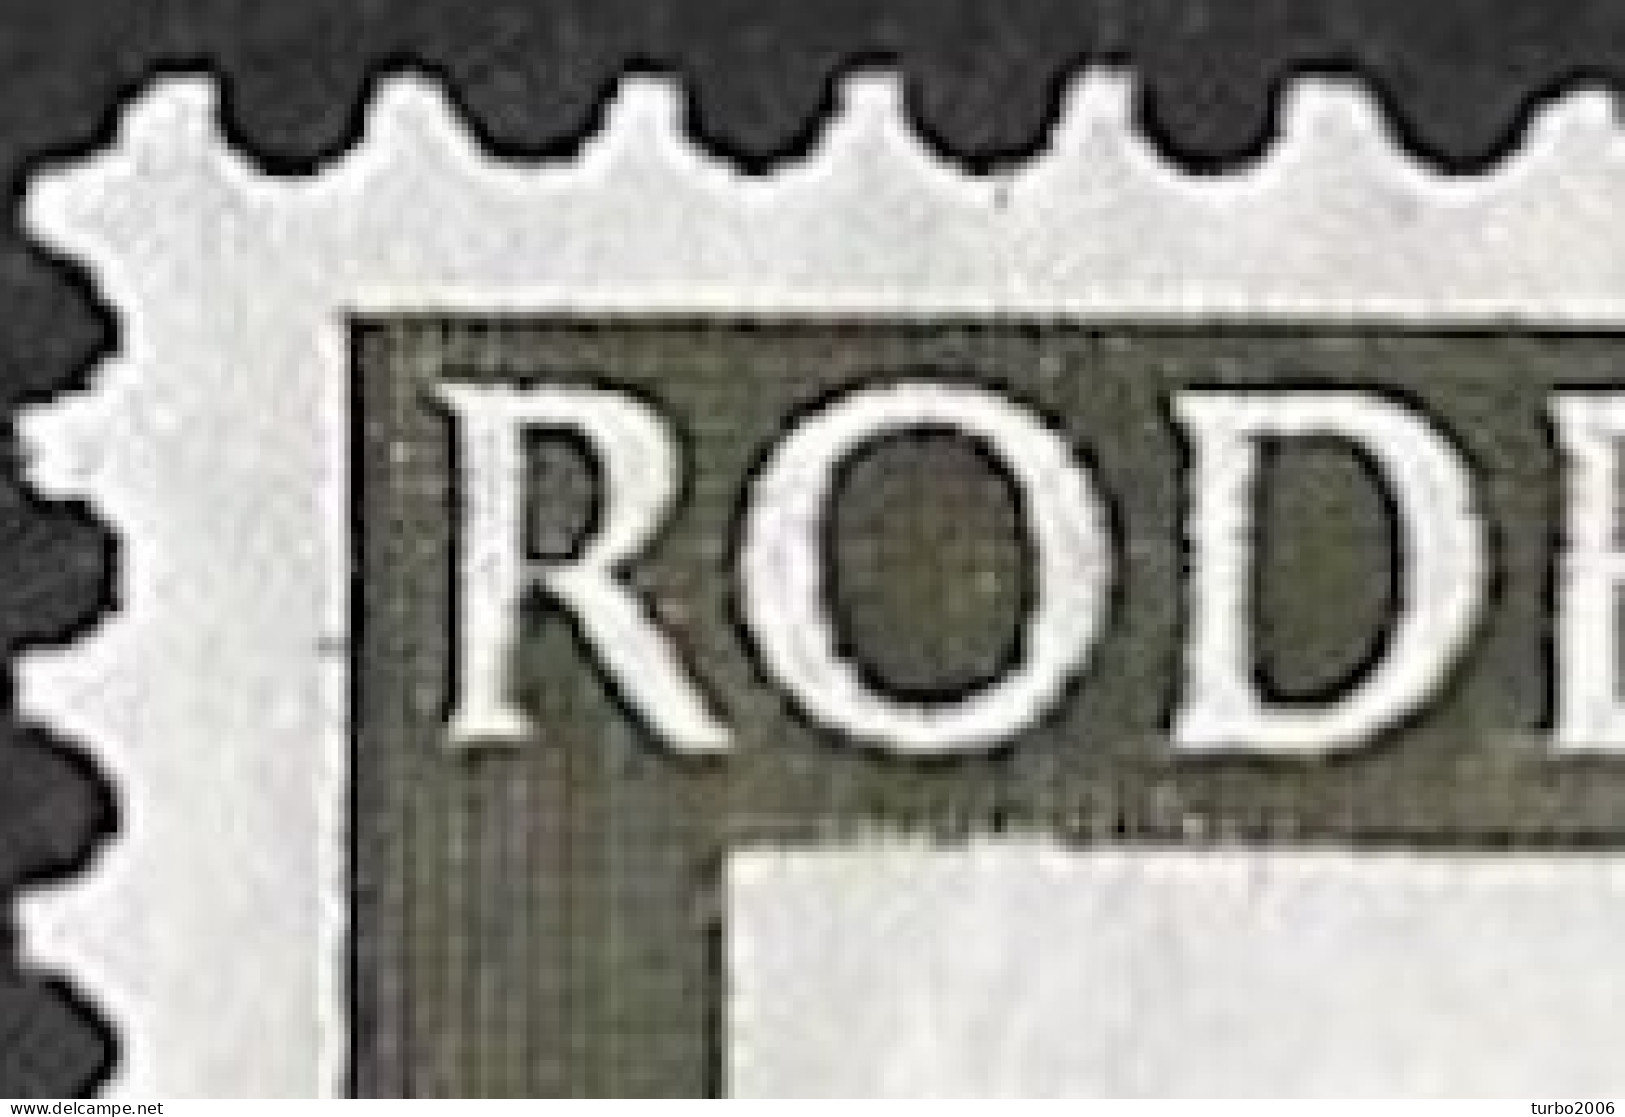 Plaatfout Inham In De Witte Rand Onder De O Van ROde In 1953 Rode Kruis Zegels 2 +3 Ct NVPH 607 PM 2 Ongestempeld - Errors & Oddities